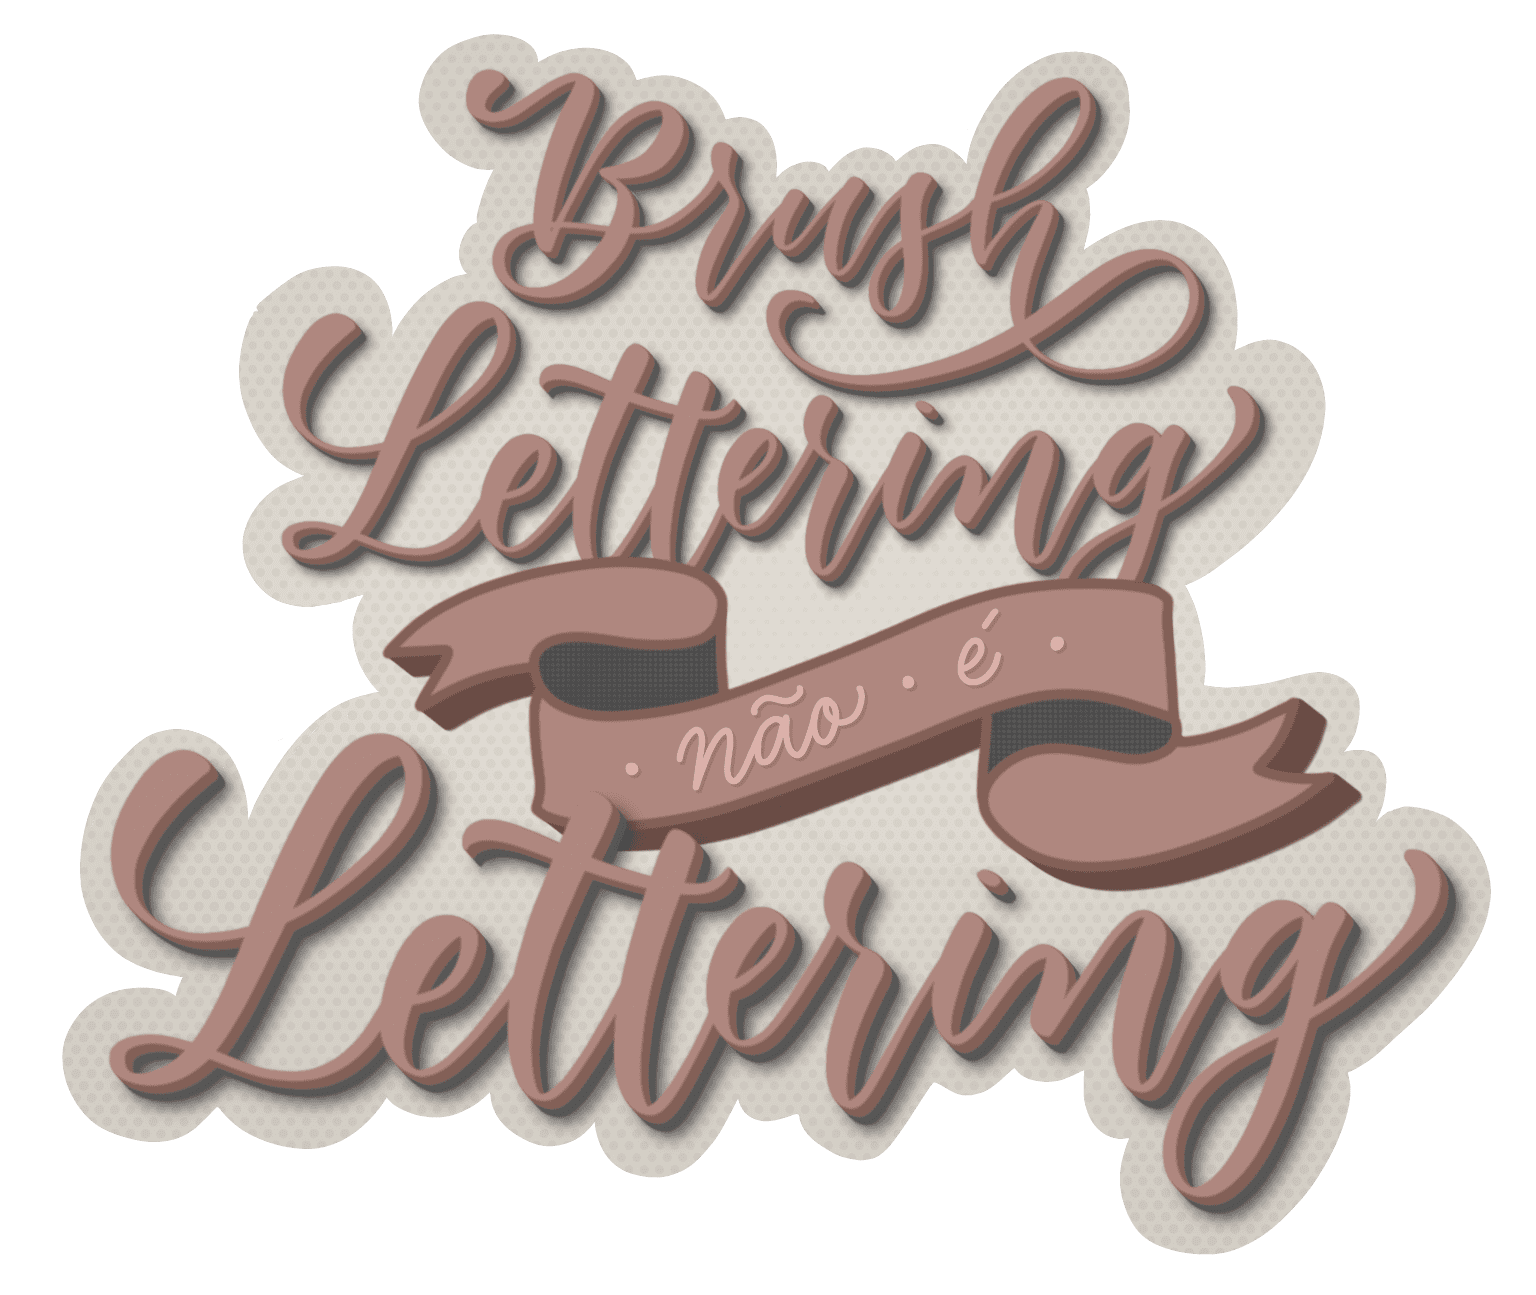 Arte digital com a frase Brush lettering não é lettering escrita em caligrafia moderna